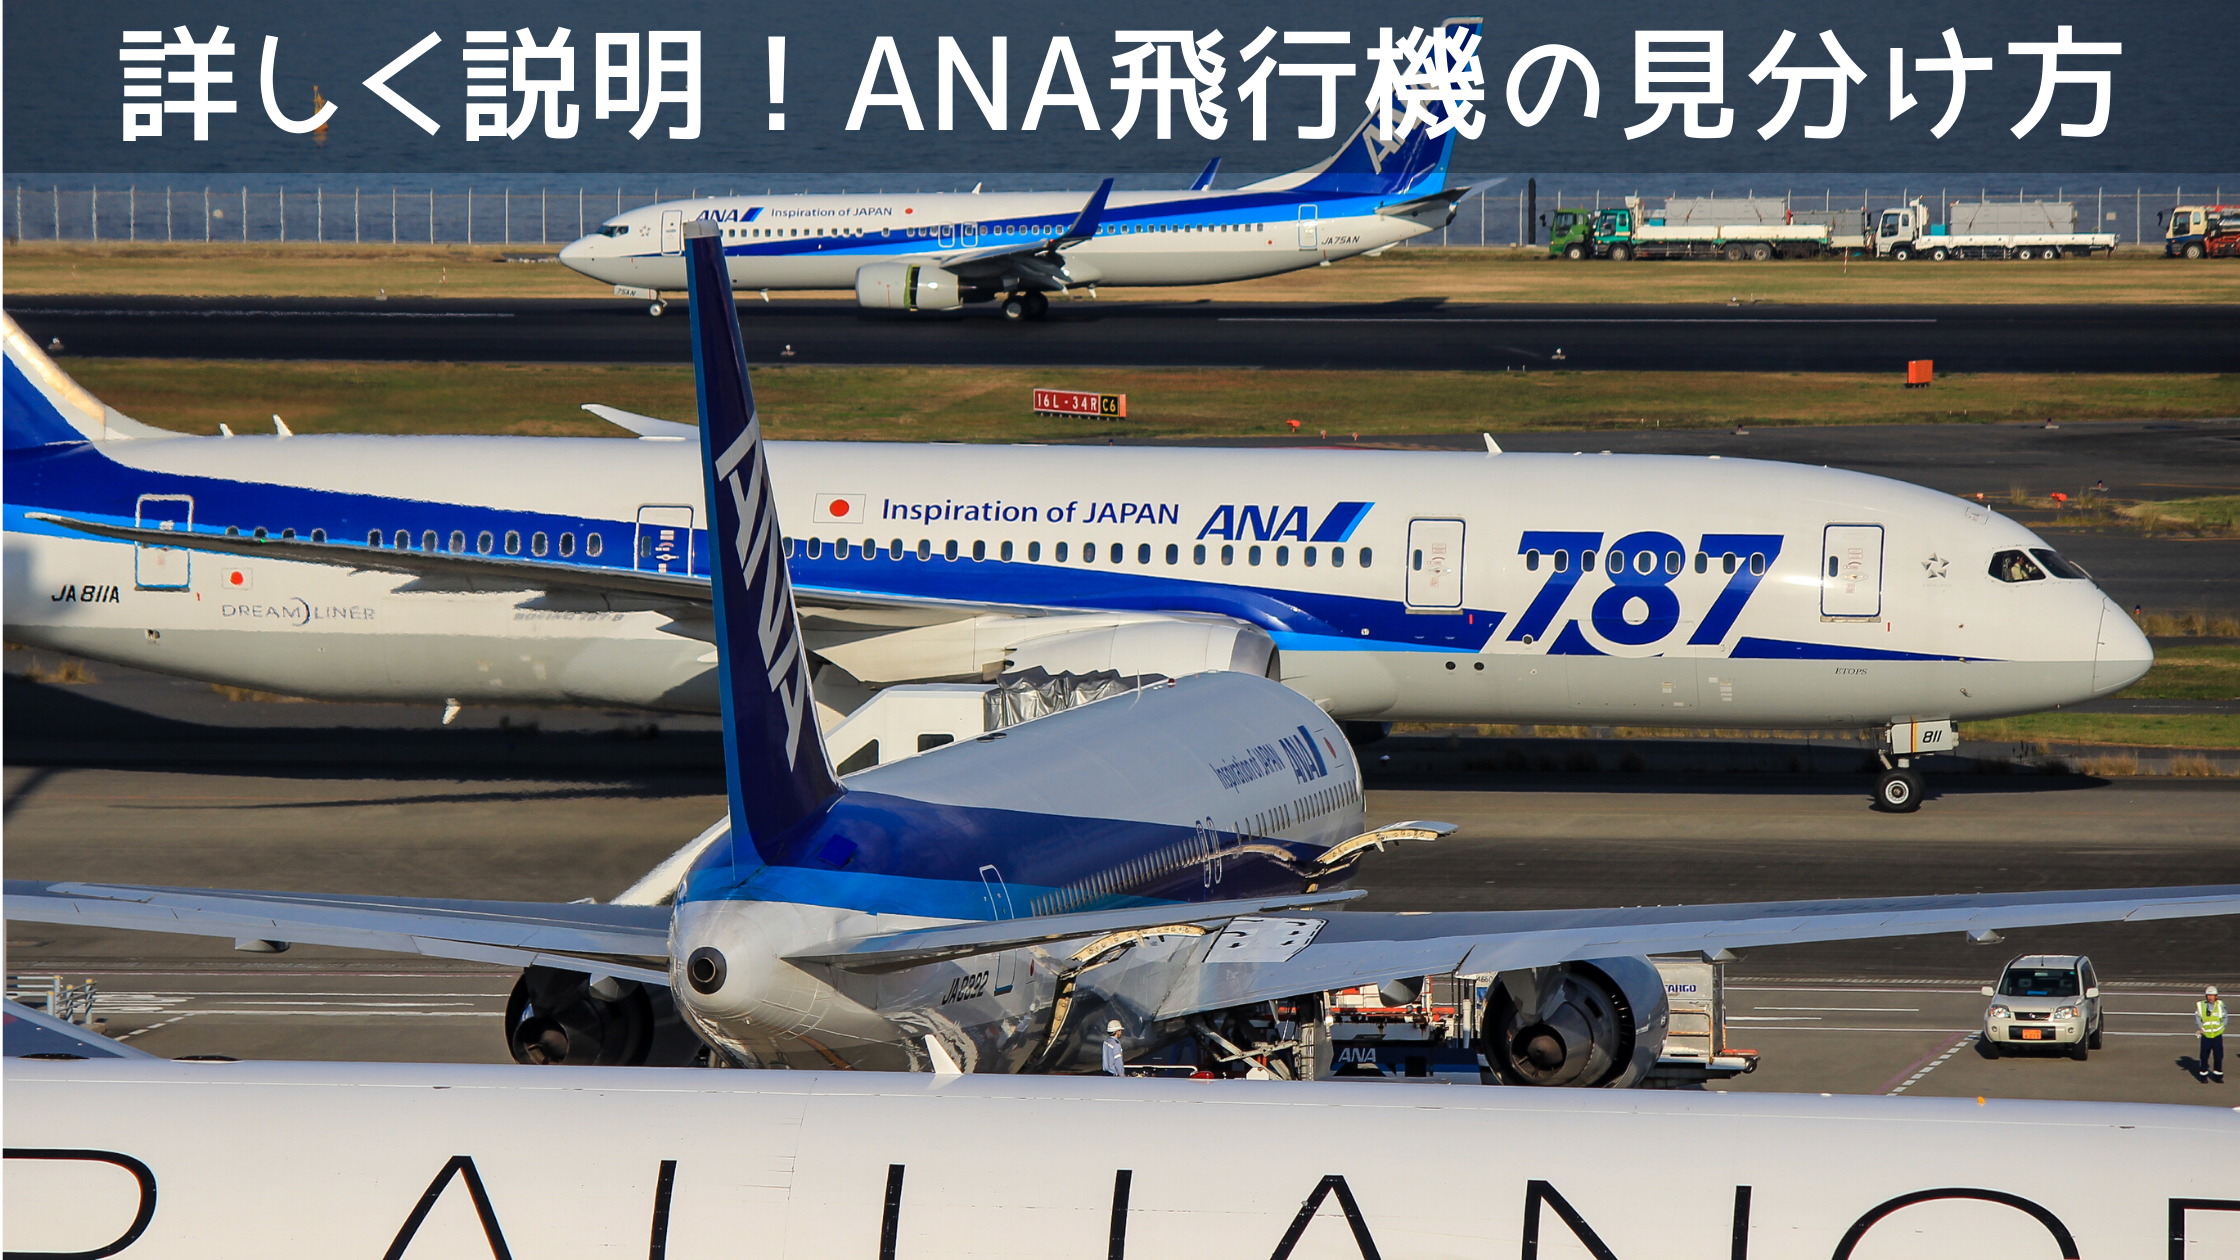 22年最新版 飛行機の見分け方を詳しく説明 全日本空輸 Ana 全13機種の運用機種で比較 シテイリョウコウ